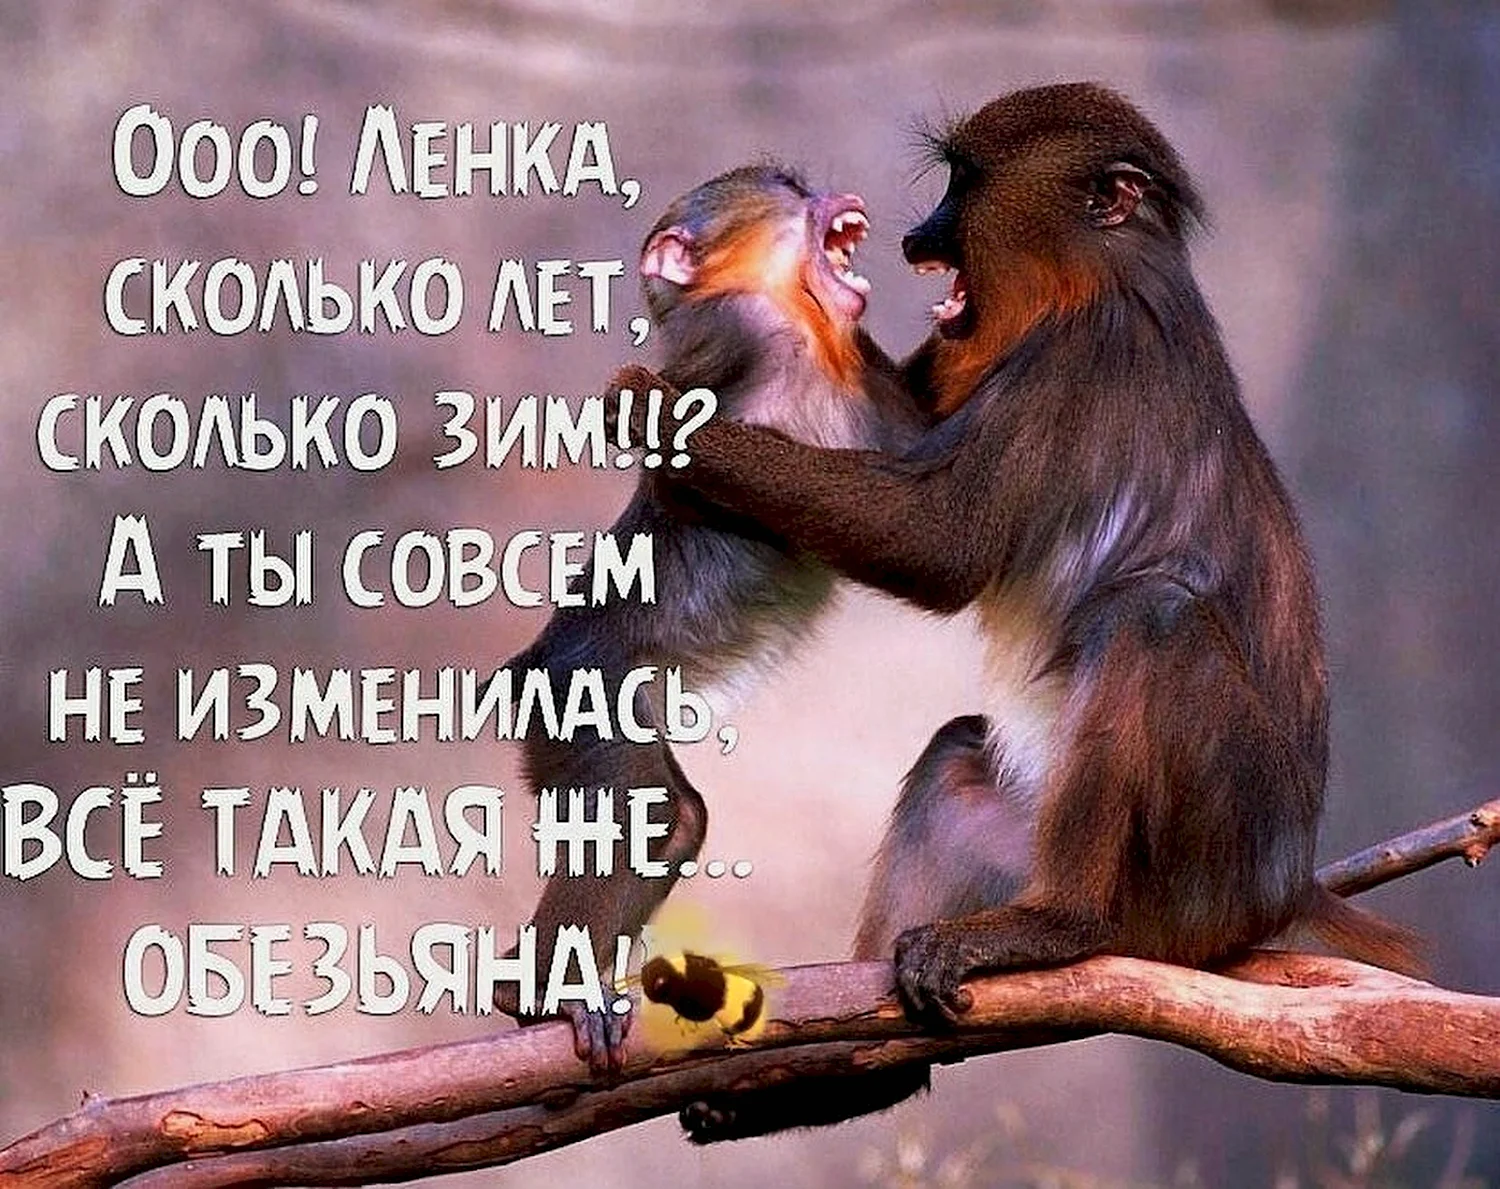 Цитаты про обезьян прикольные